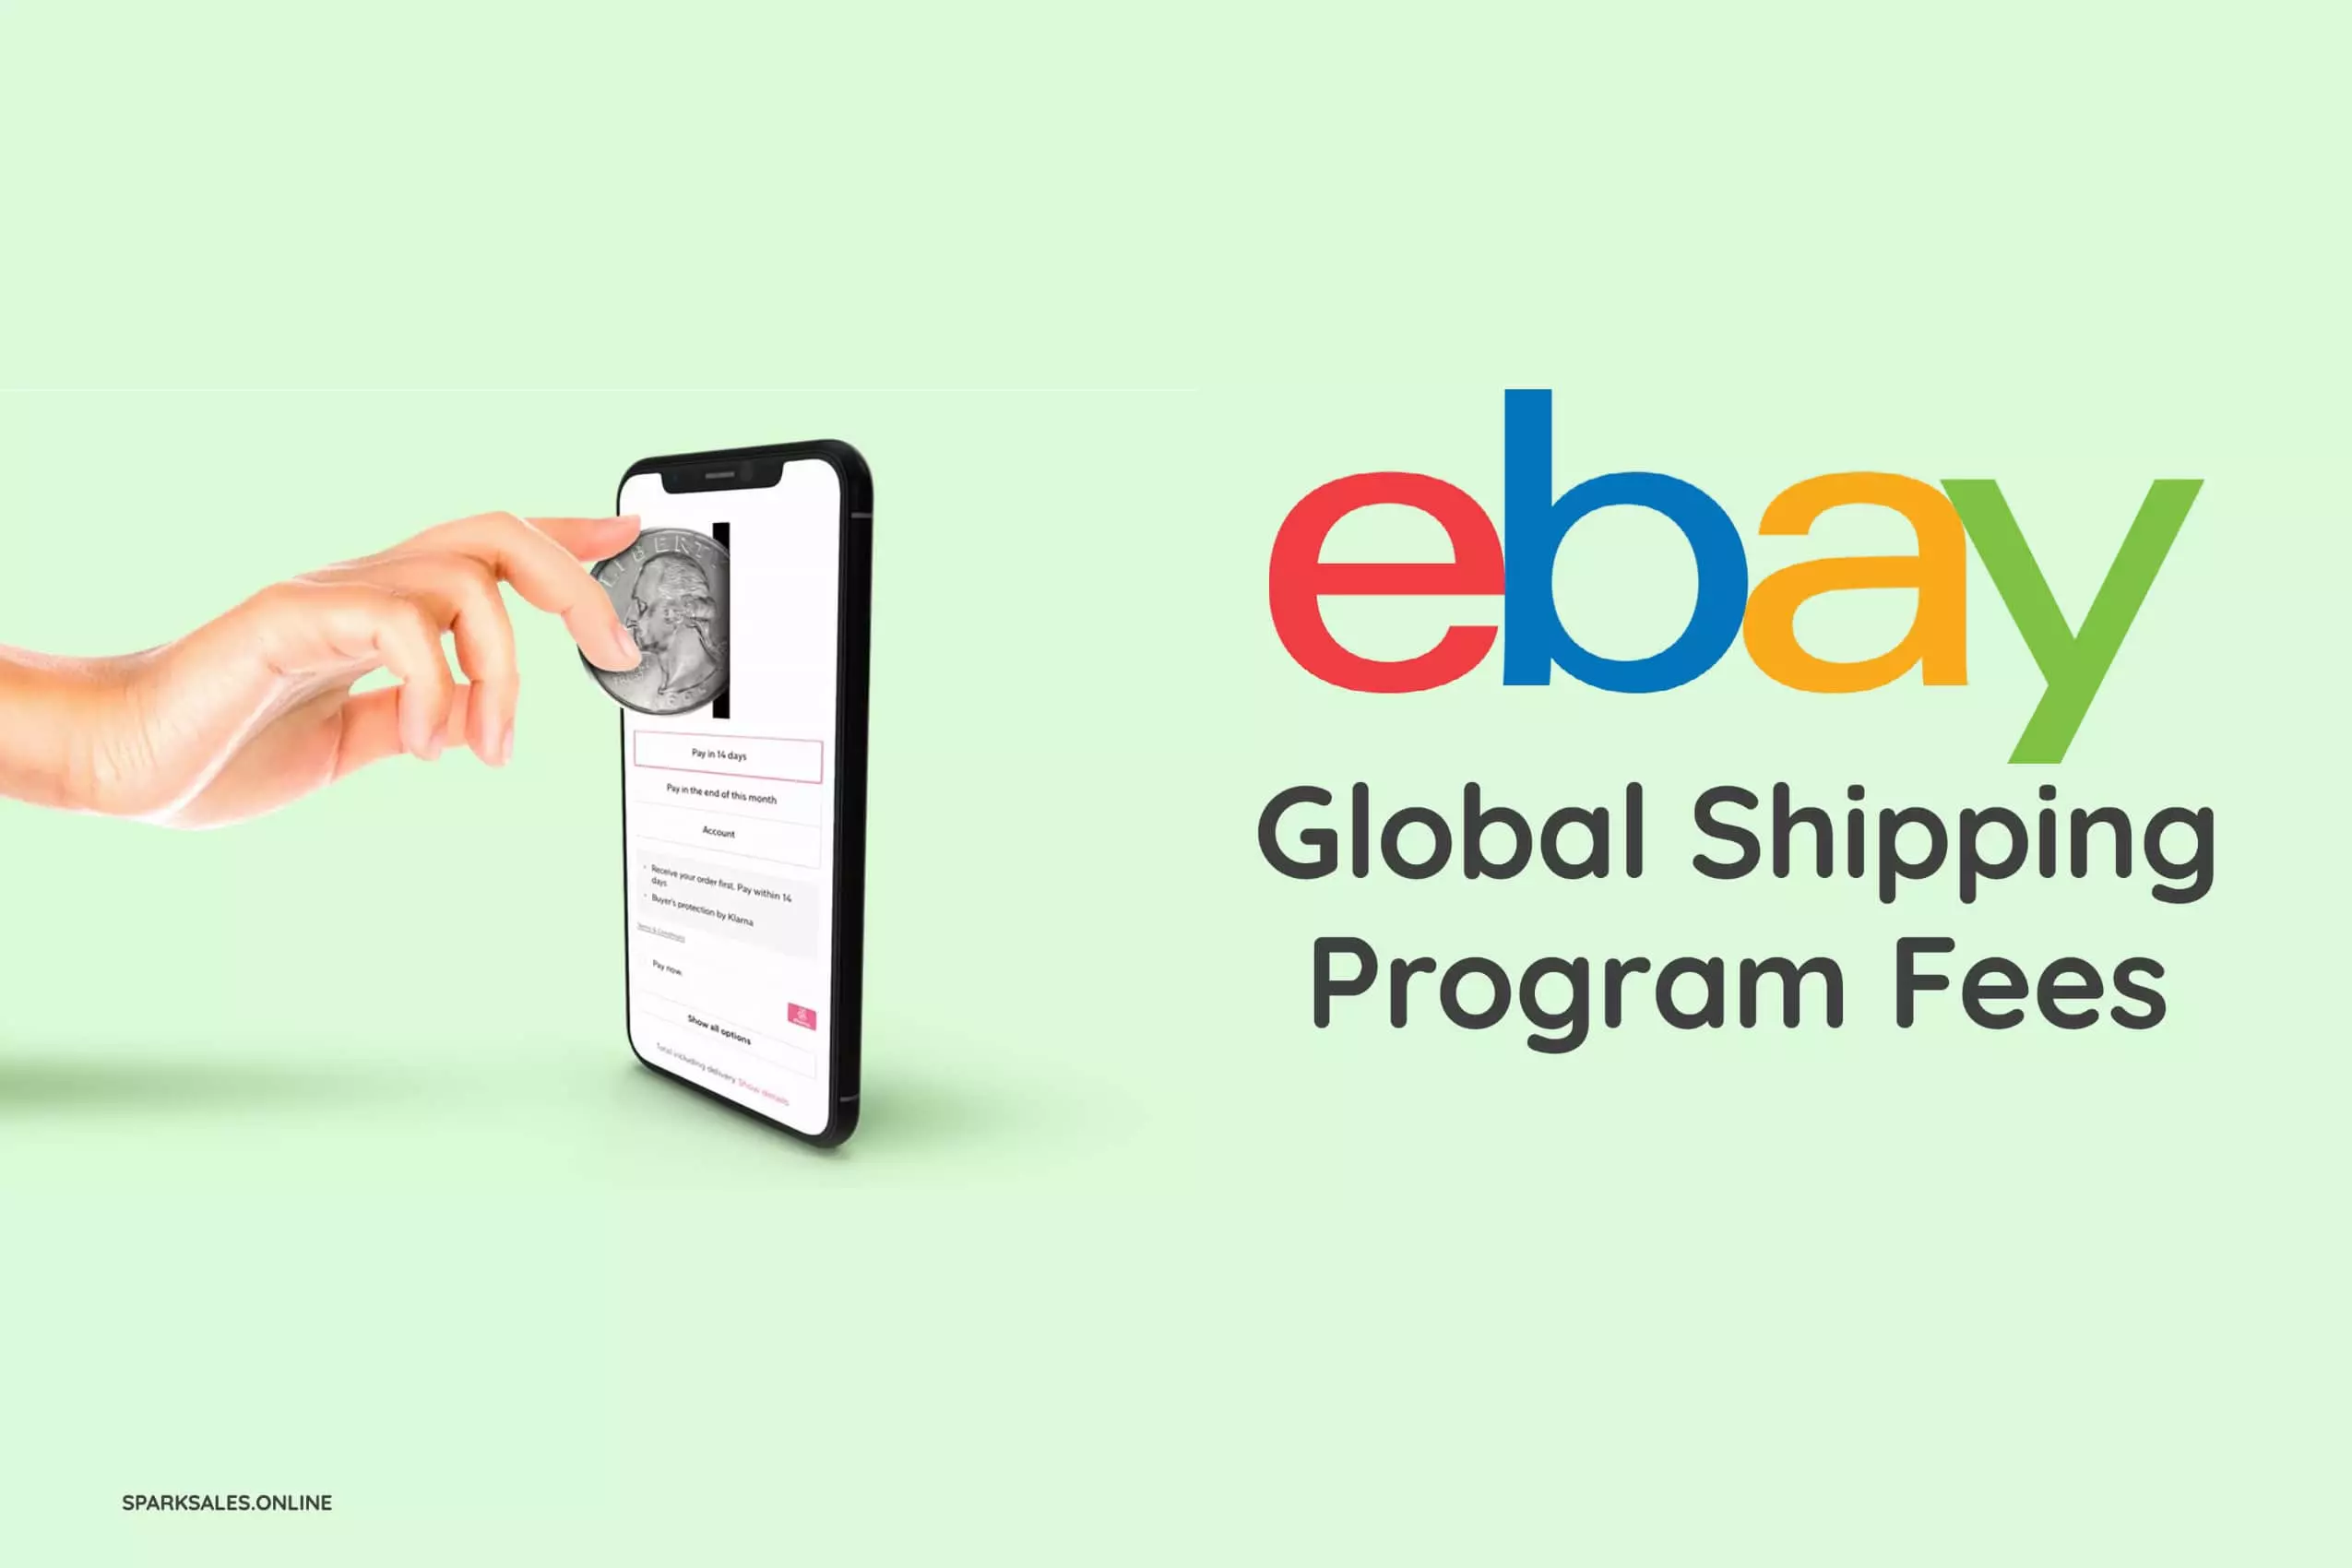 eBay Global Shipping Program Fees